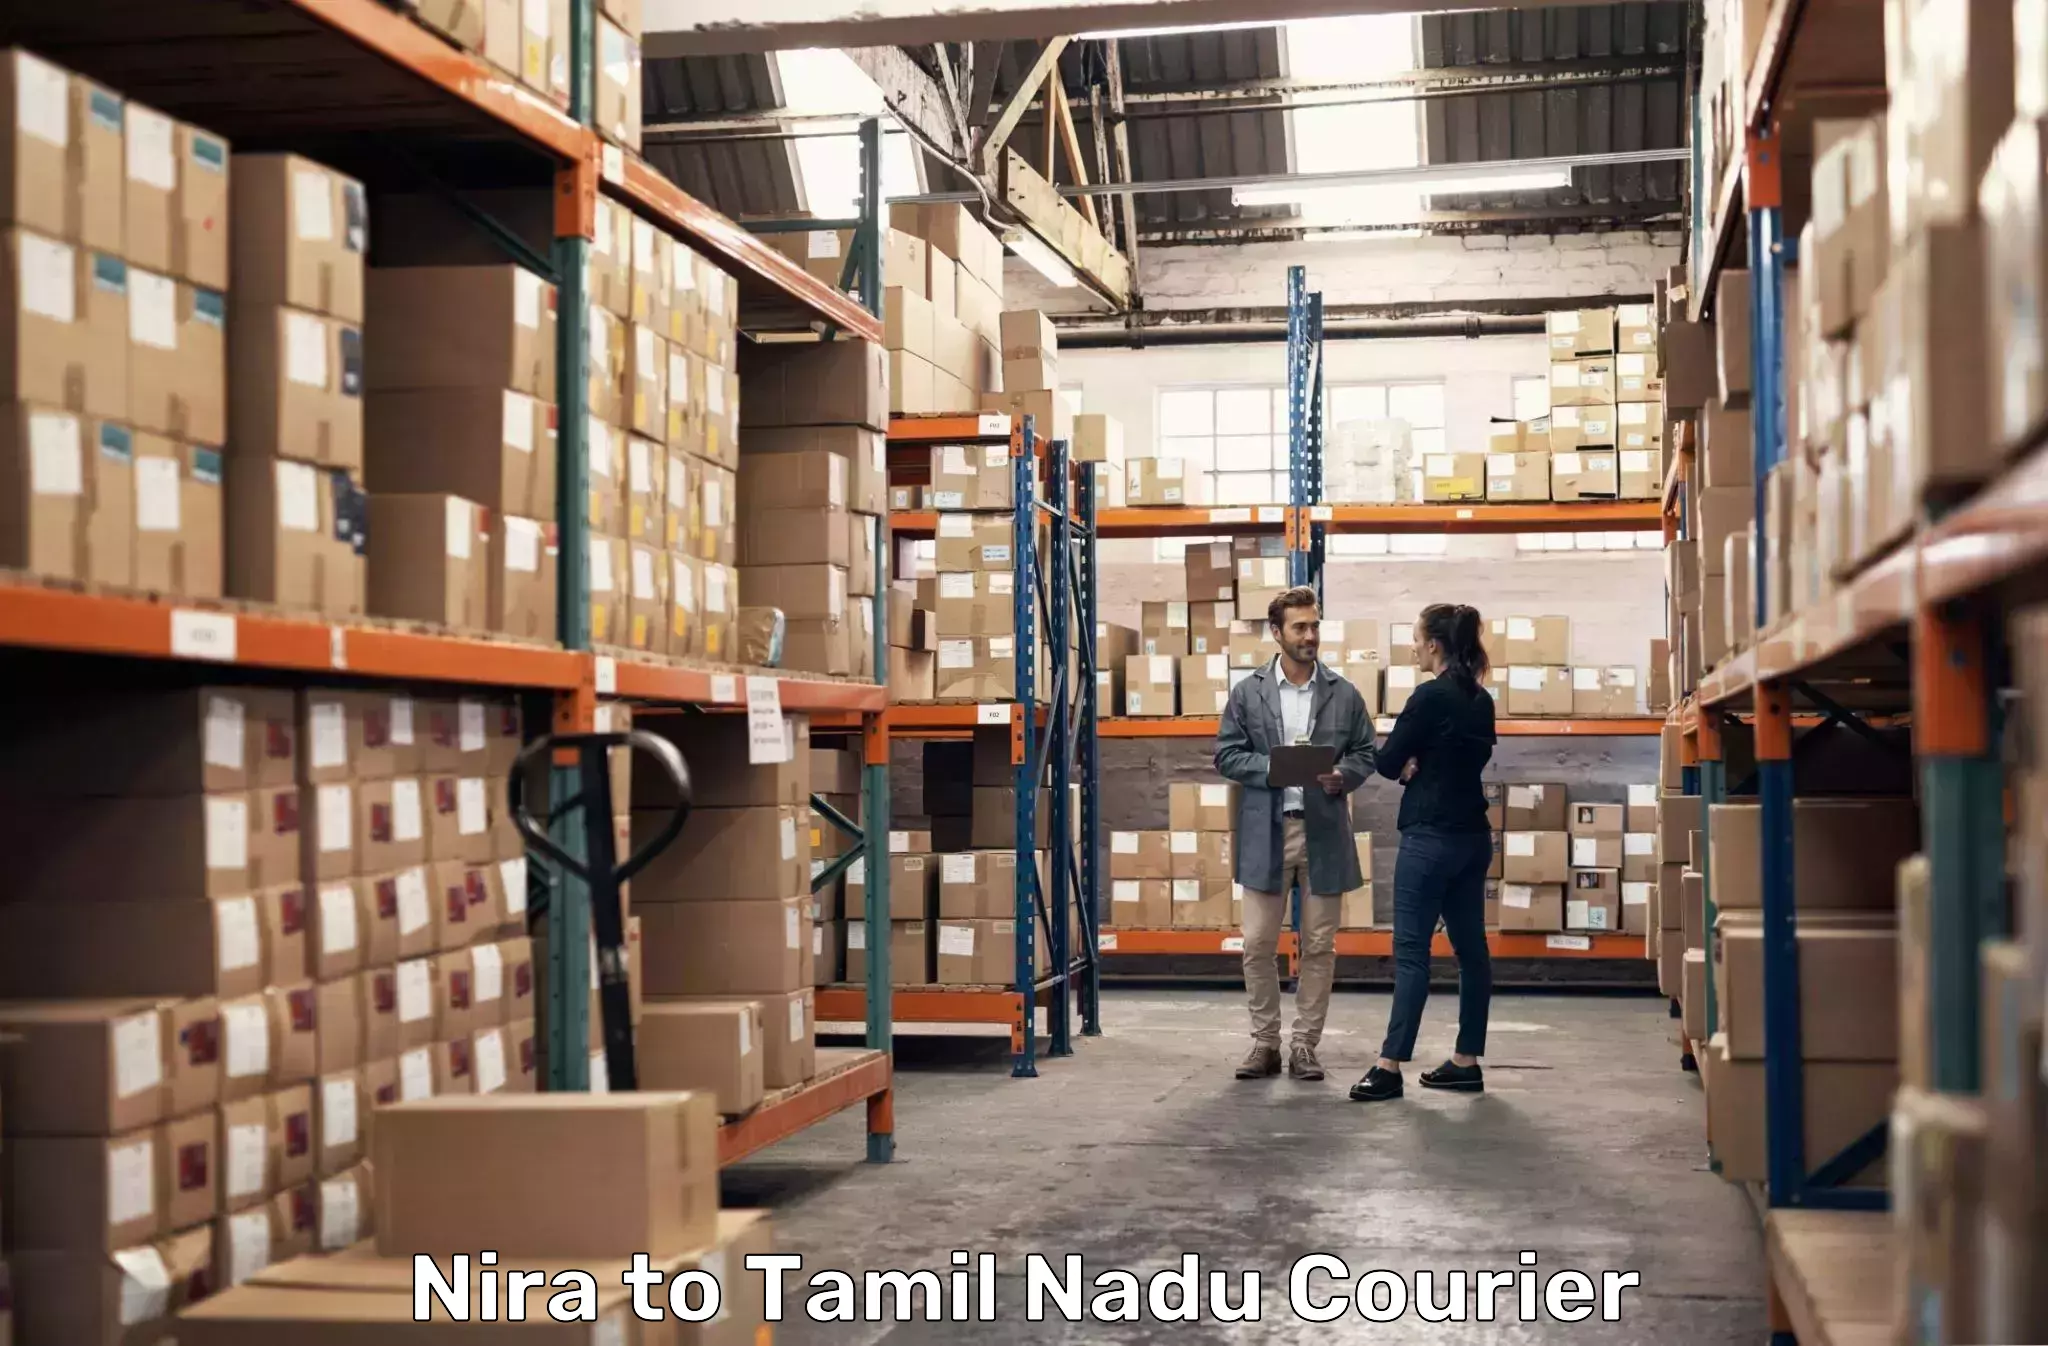 Bulk courier orders Nira to Gobichettipalayam